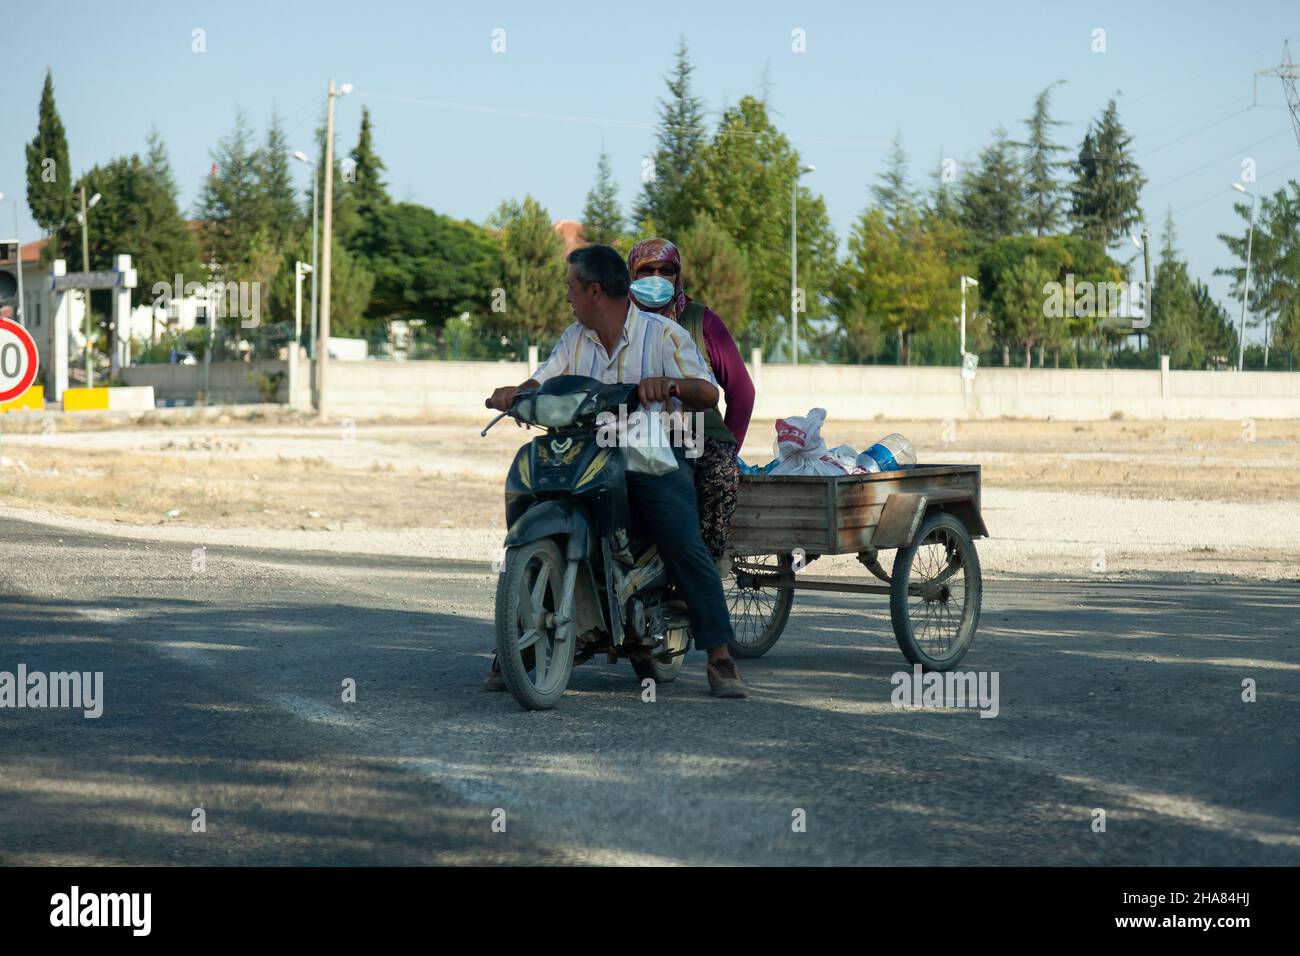 Antalya, Turquía - 08. 28. 2021: Pequeña motocicleta convertida en remolque de tres ruedas para transportar cargas ligeras. Foto de stock